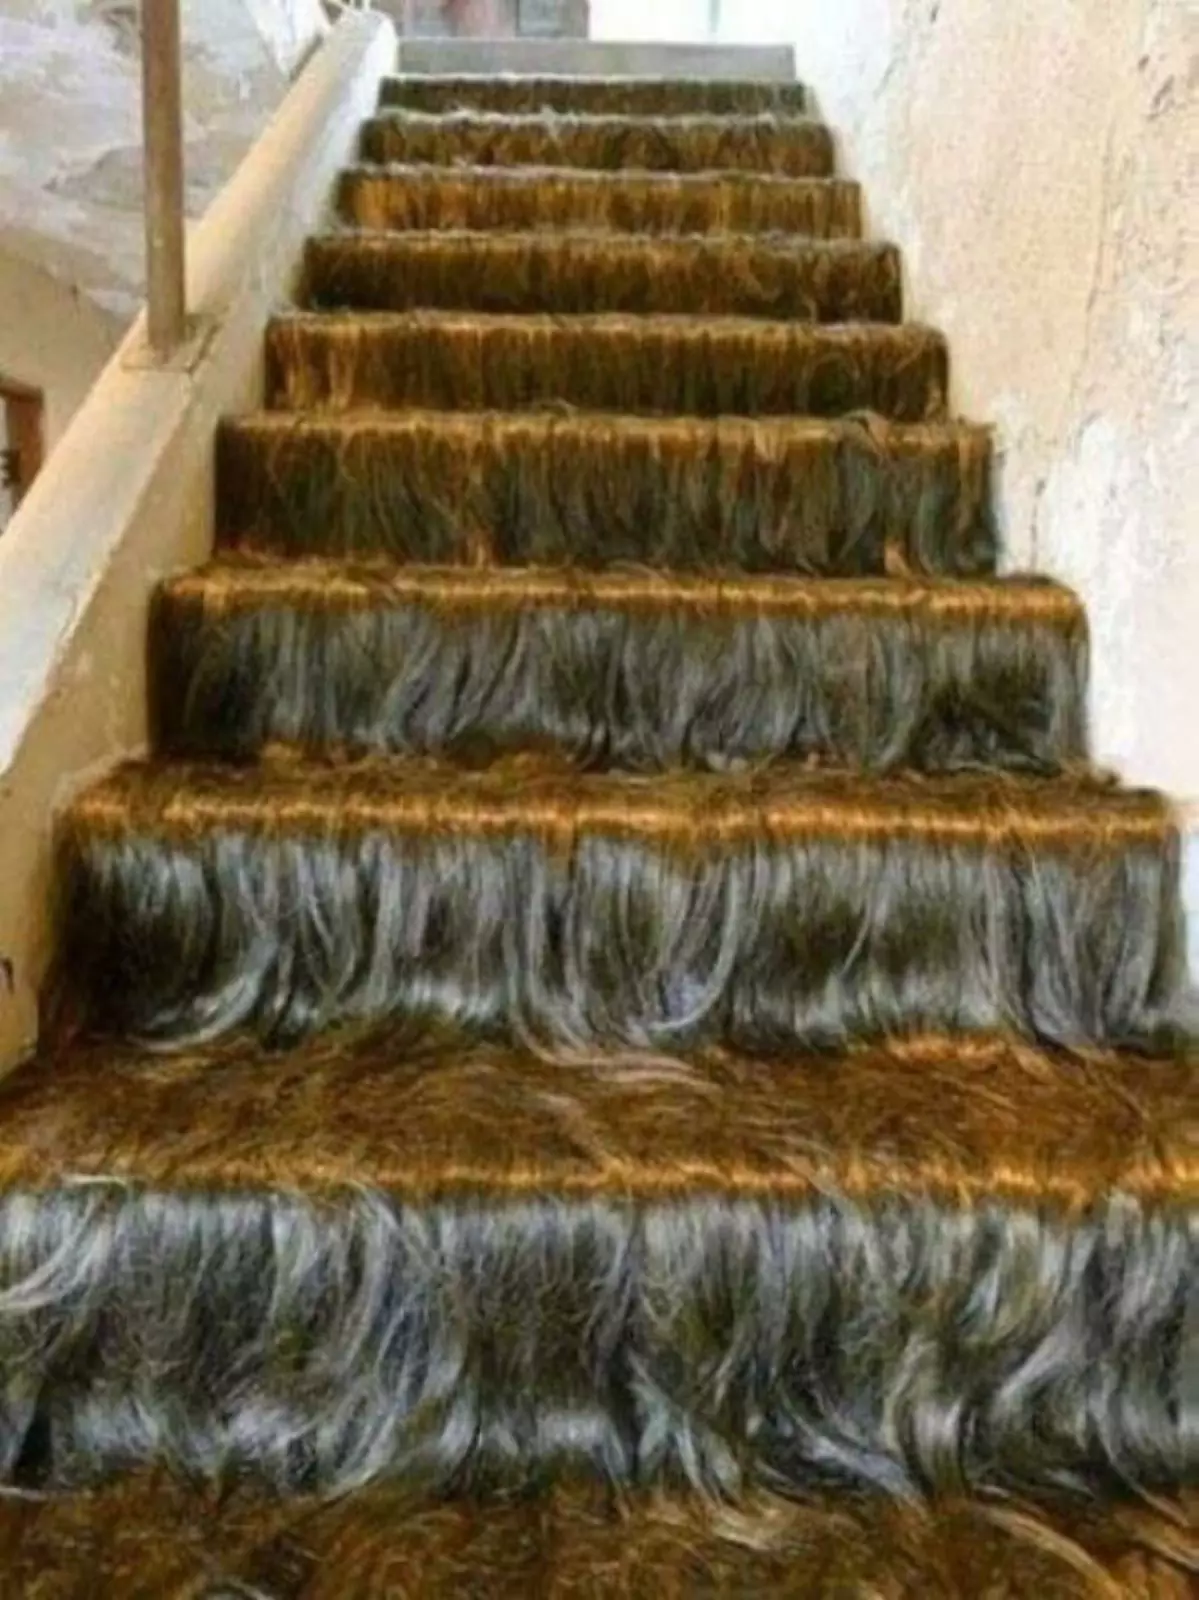 Сколько шампуня надо, чтобы помыть эту лестницу?